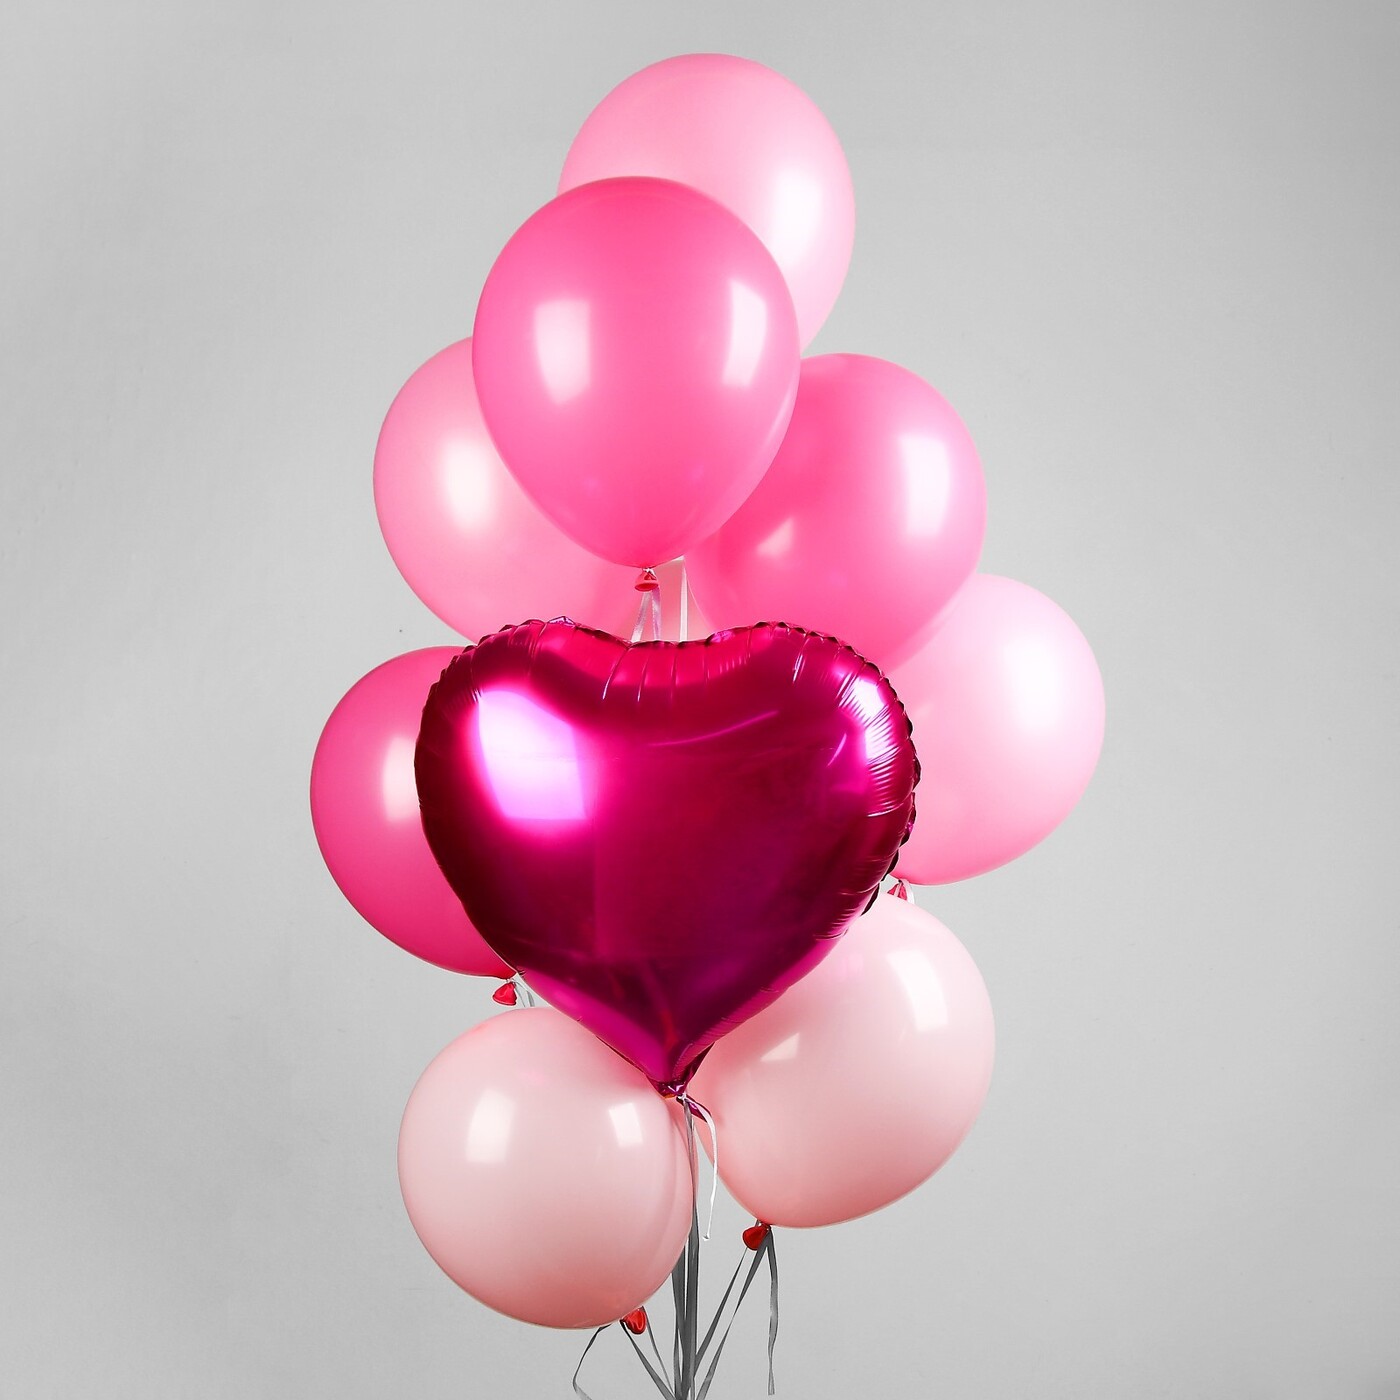 Гелий на 10 шаров. Фонтаны из шары. Гелиевые шары. Воздушный шарик. Розовые шарики воздушные.